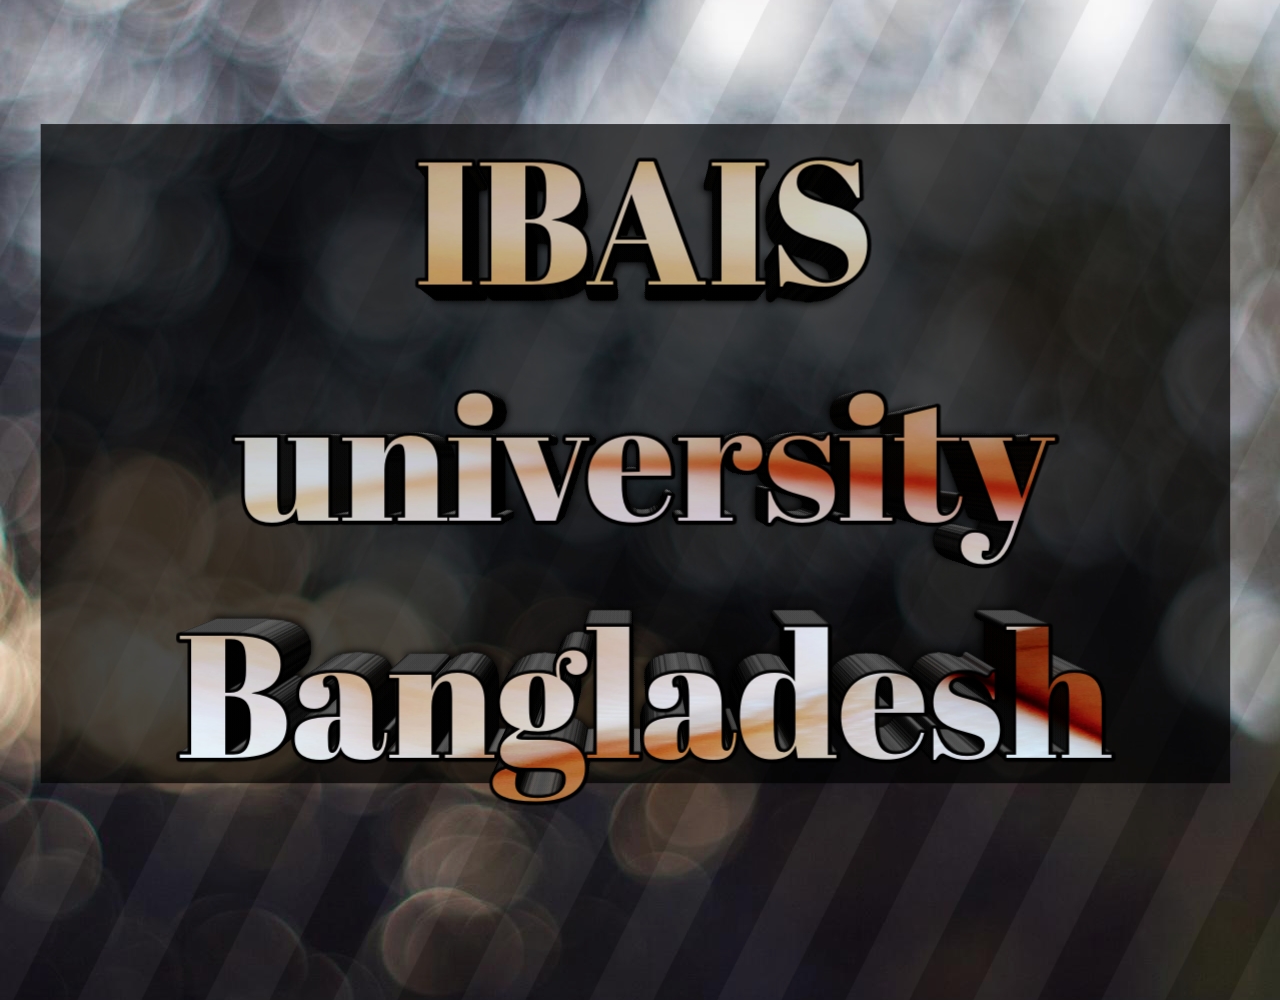 আইবিএআইএস বিশ্ববিদ্যালয়ে ভর্তি পরীক্ষার পদ্ধতি 2020-2021, IBaIS university of Bangladesh Admission system 2020-2021, IBAIS university of Bangladesh admission test exam 2020-2021, আইবিএআইএস বিশ্ববিদ্যালয়ে আবেদনের যোগ্যতা ২০২০-২১, IBAIS university of Bangladesh admission ability 2020-2021, আইবিএআইএস বিশ্ববিদ্যালয়ে আবেদনের ন্যূনতম জিপিএ,  IBAIS university of Bangladesh admission test, আইবিএআইএস বিশ্ববিদ্যালয় ইউনিট পদ্ধতি, IBAIS university of Bangladesh unit system, আইবিএআইএস বিশ্ববিদ্যালয়ের ভর্তি পরীক্ষার নম্বর বন্টন ২০২০-২০২১, IBAIS university of Bangladesh subject list, আইবিএআইএস বিশ্ববিদ্যালয়ের ভর্তি পরীক্ষার তারিখ ২০২০-২০২১, IBAIS university of Bangladesh admission date 2020-2021, আইবিএআইএস বিশ্ববিদ্যালয় আসন সংখ্যা 2020-2021, IBAIS university of Bangladesh admission seat 2020-2021, আইবিএআইএস বিশ্ববিদ্যালয় আবেদন ফি 2020-2021, IBAIS university of Bangladesh admission fee 2020-2021,